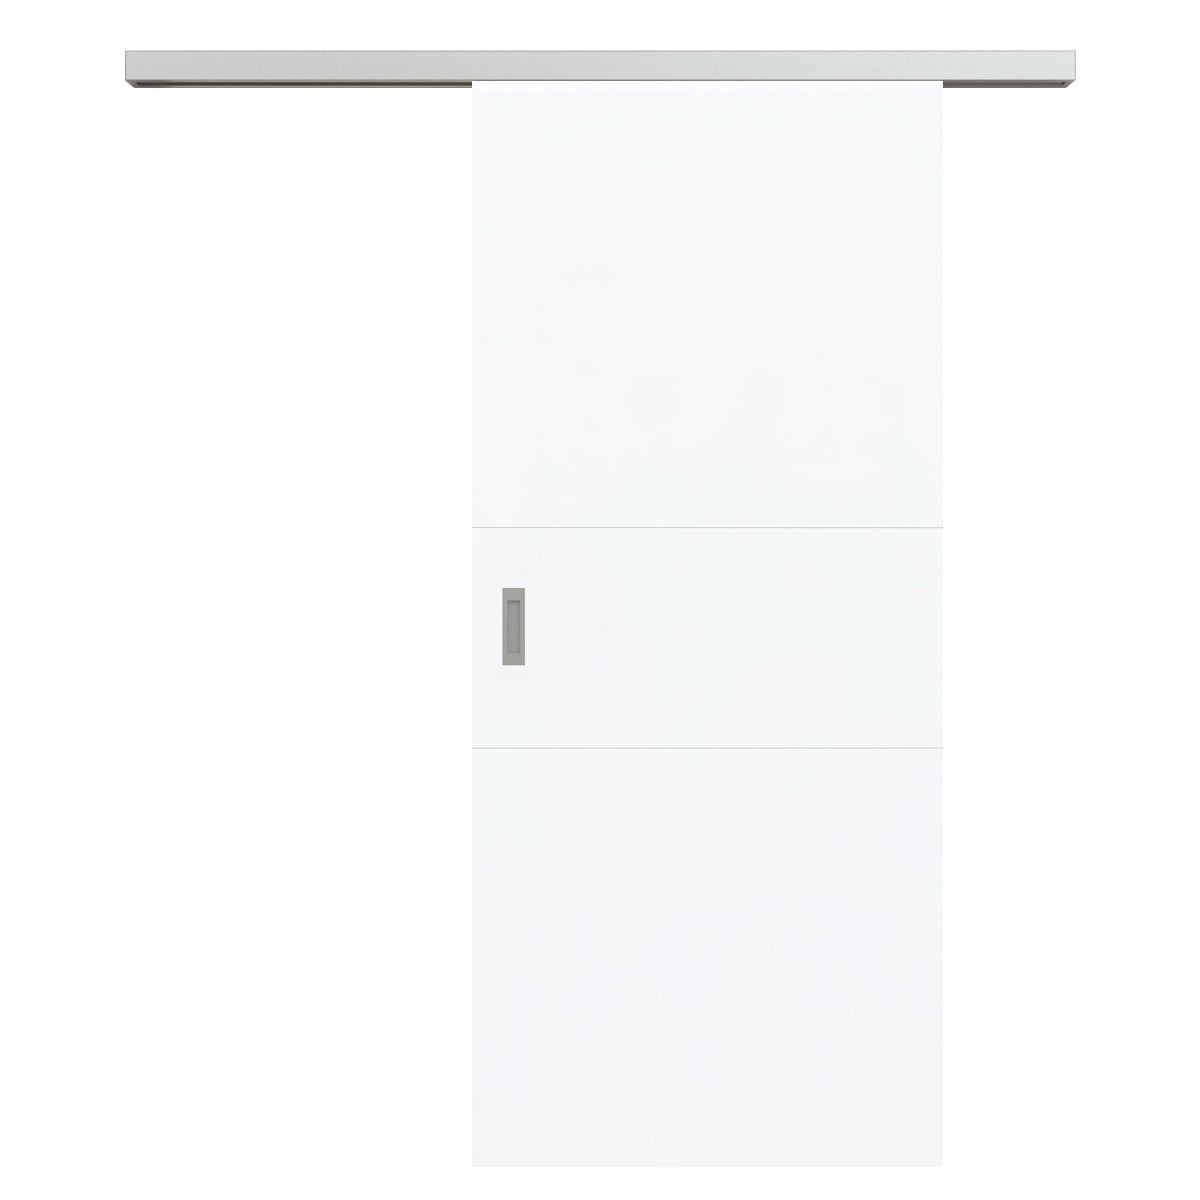 Schiebetür für Set mit Edelstahllaufkasten brillant-weiß 2 Rillen quer - Modell Designtür Q23